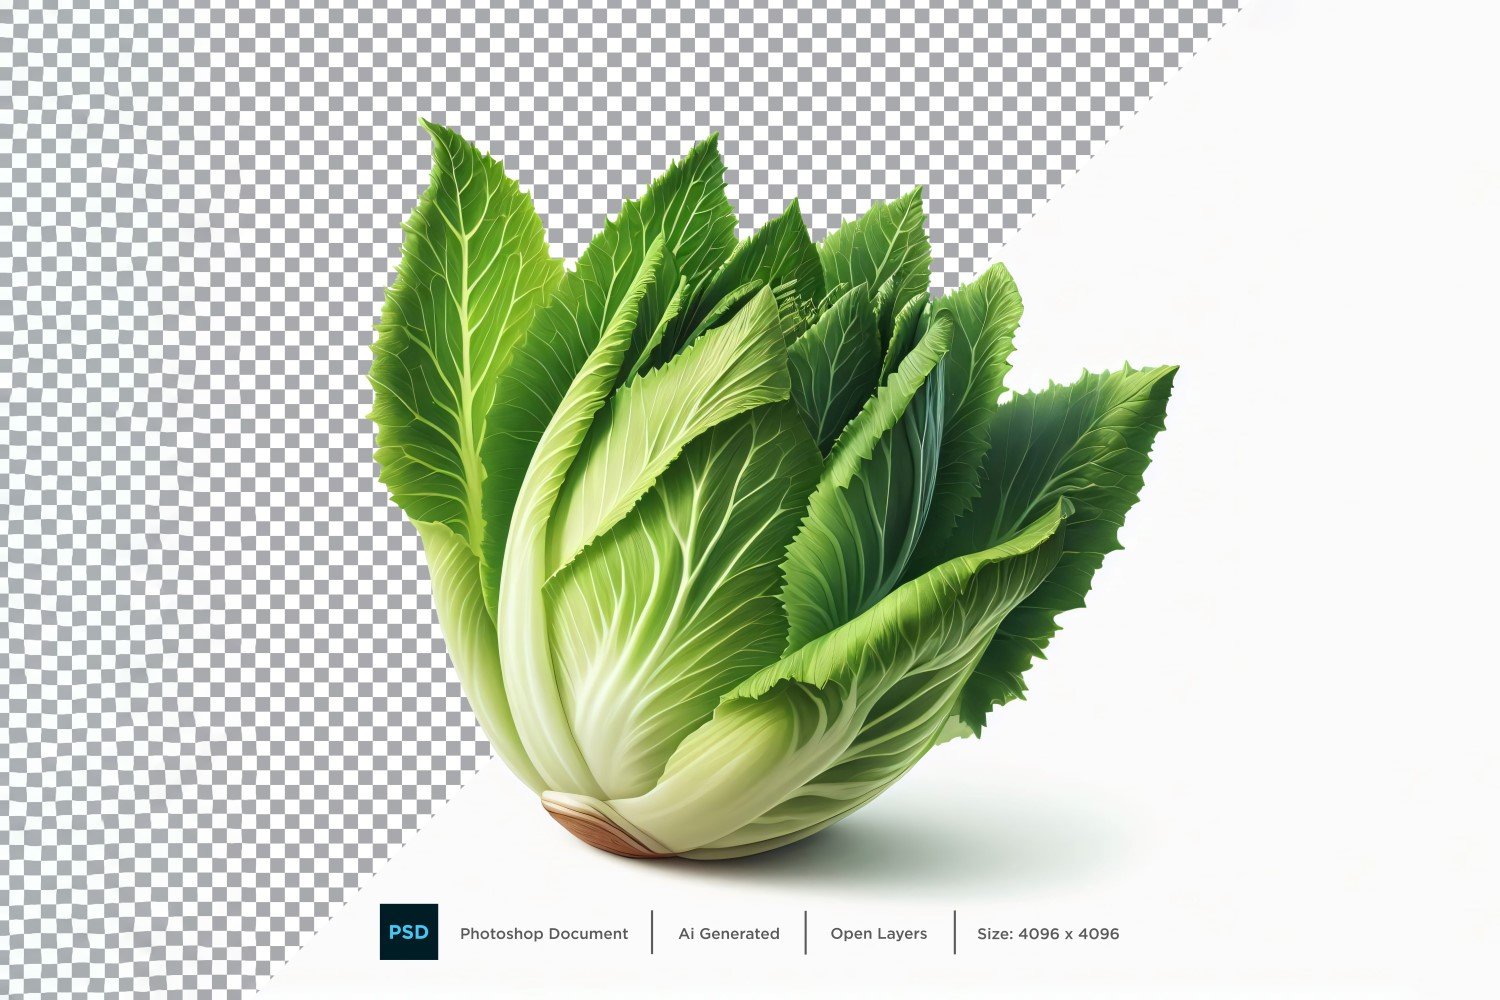 Endive Fresh Vegetable Transparent background 02